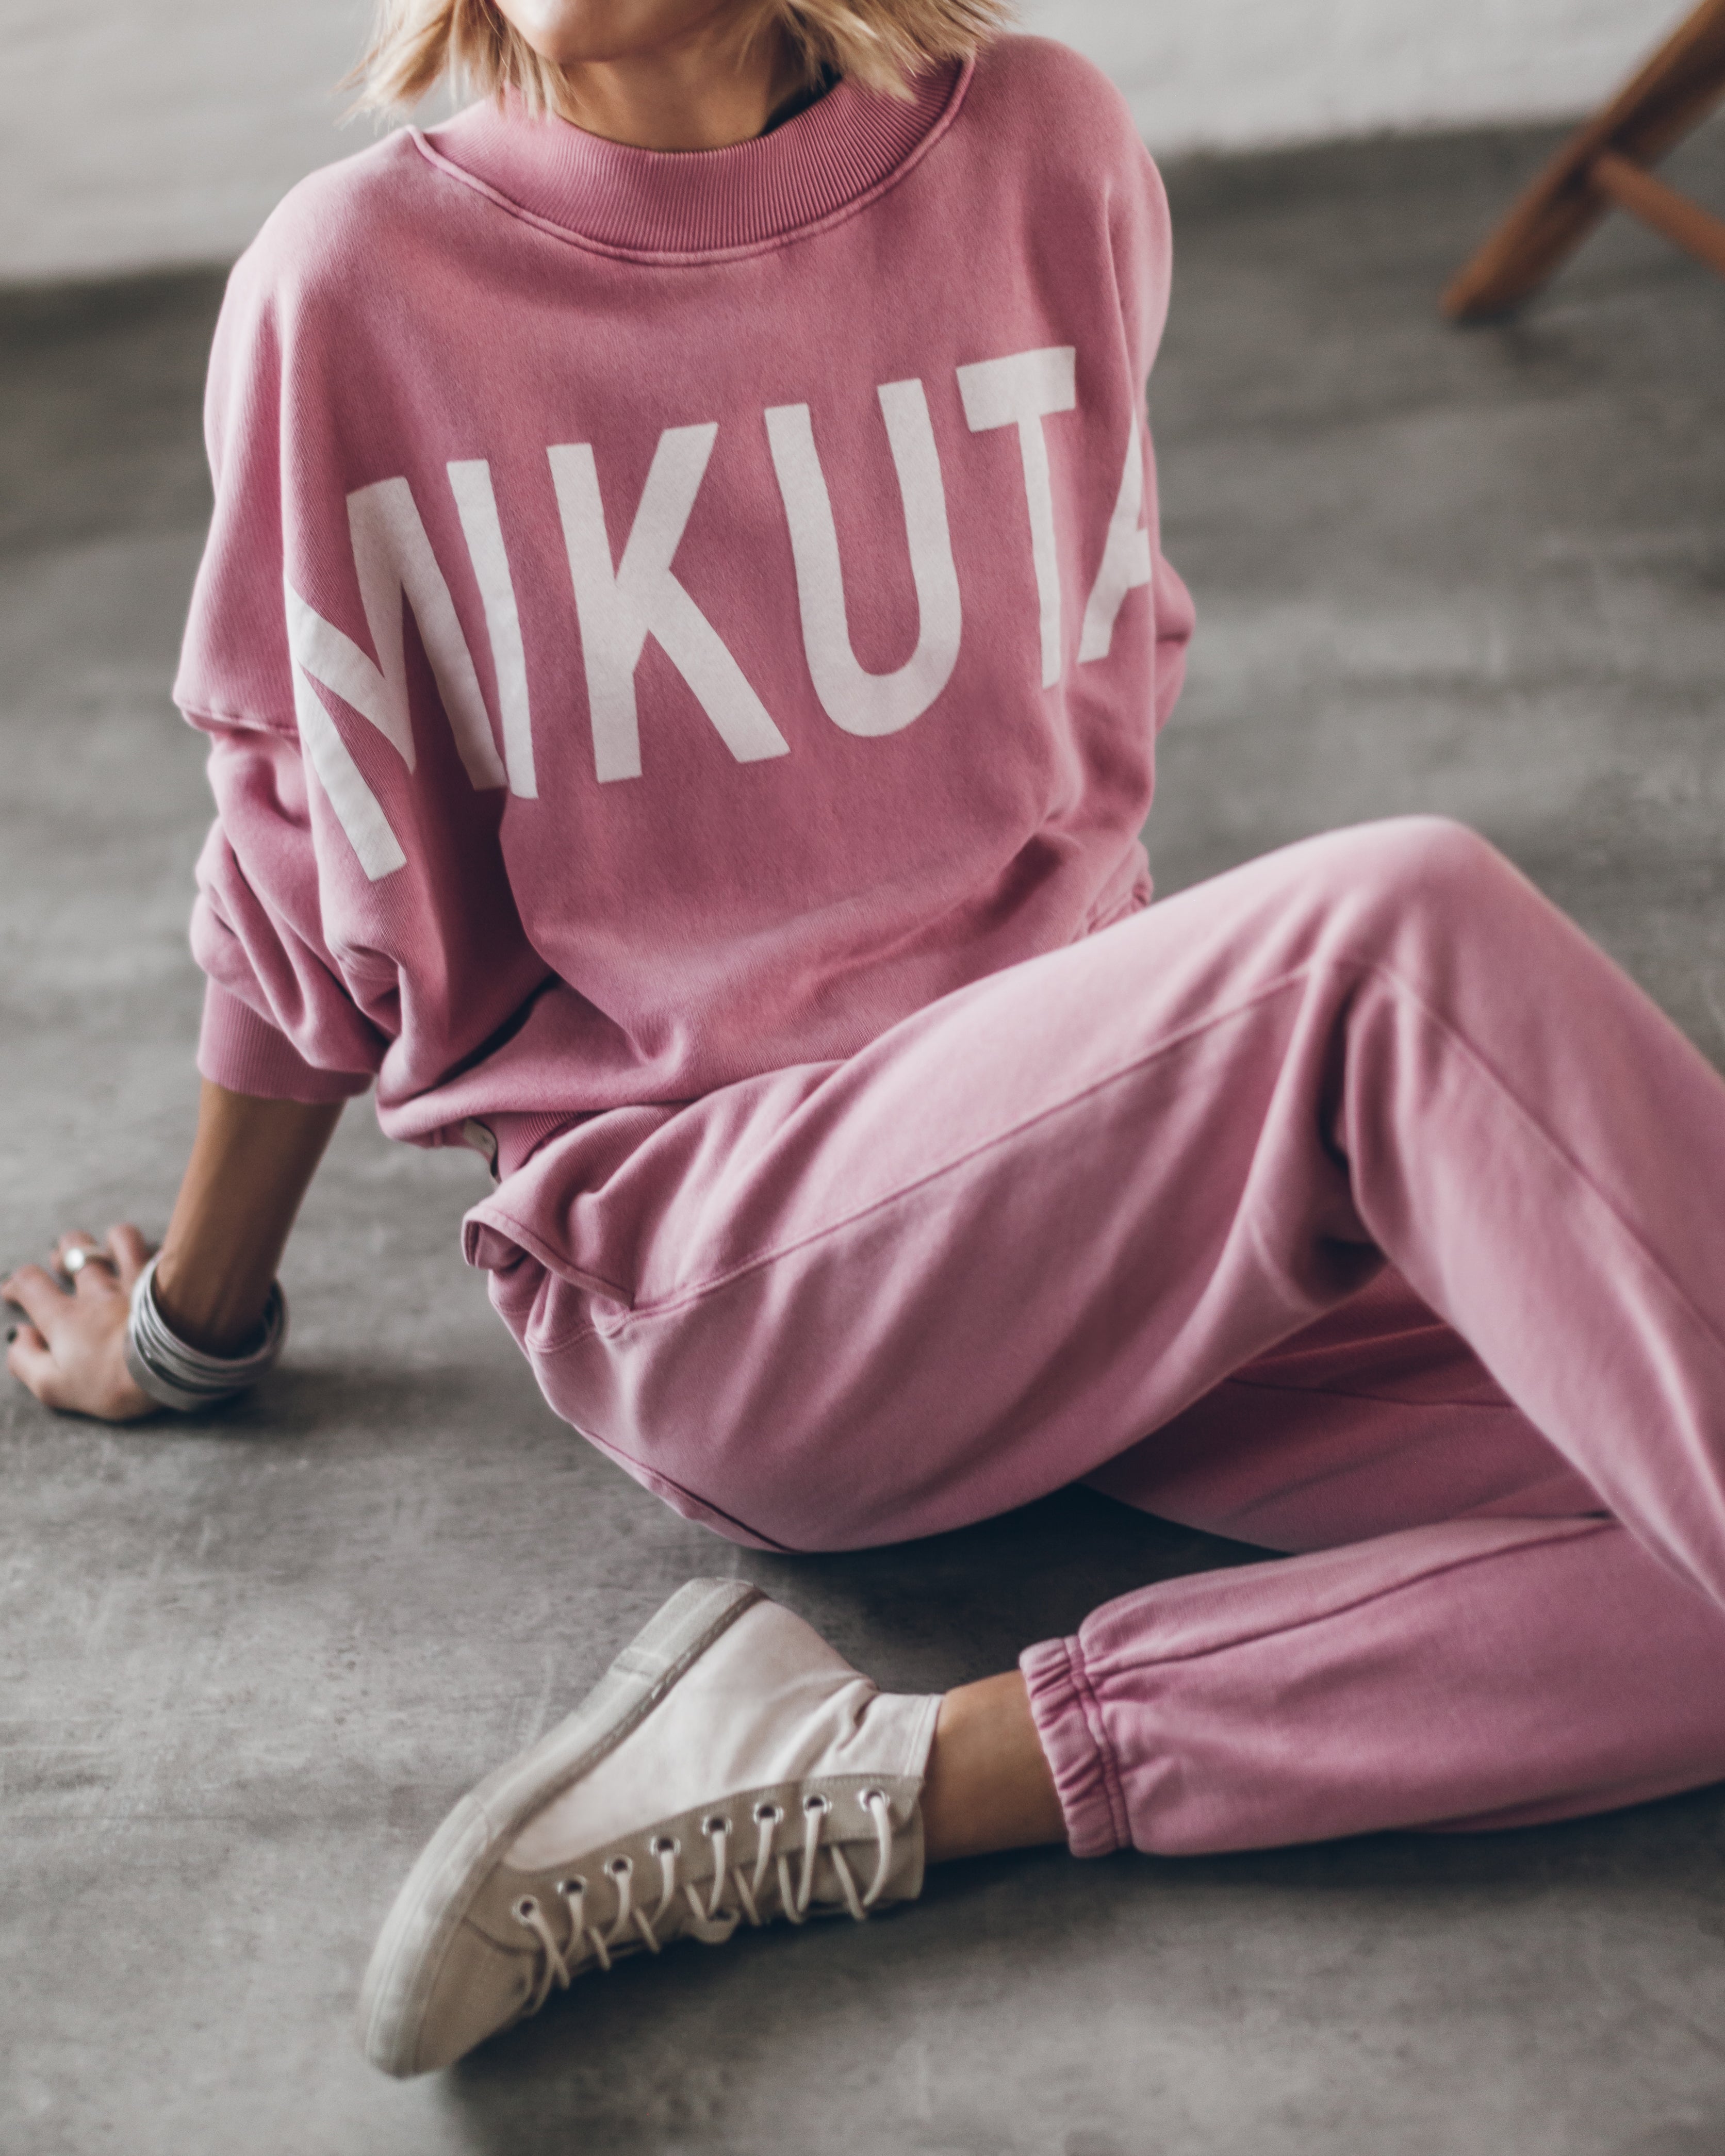 The Pink Mikuta Joggers – MIKUTA